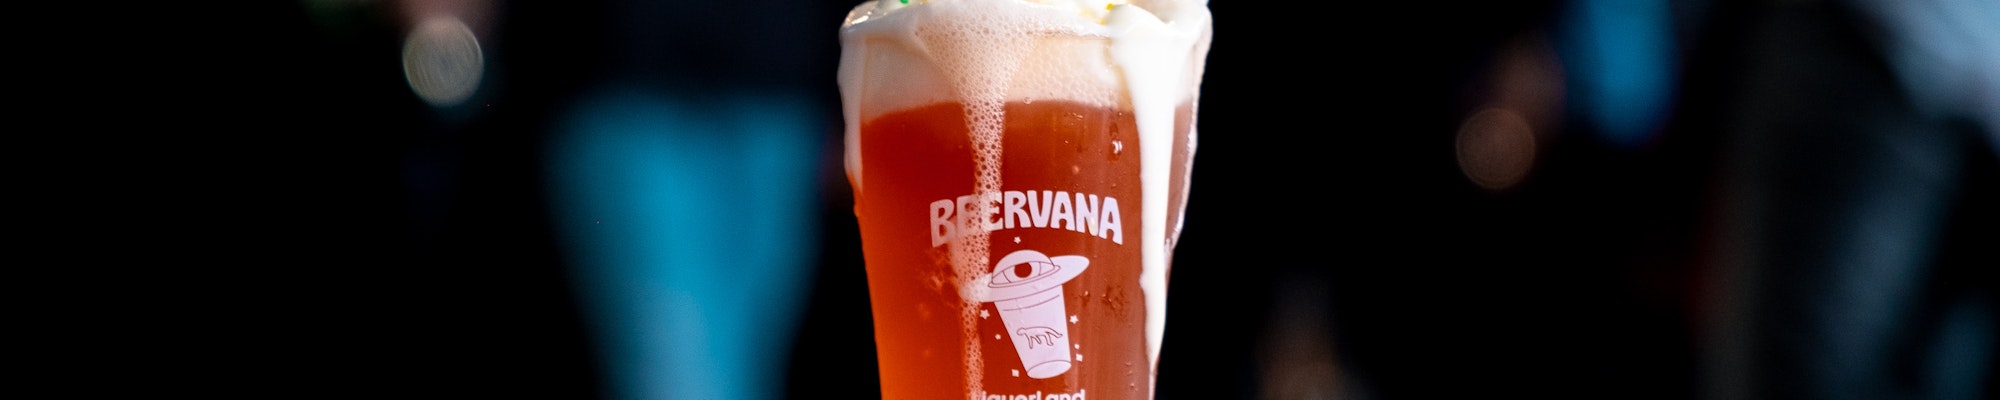 Beervana 2022 - Boneface brewing spider beer